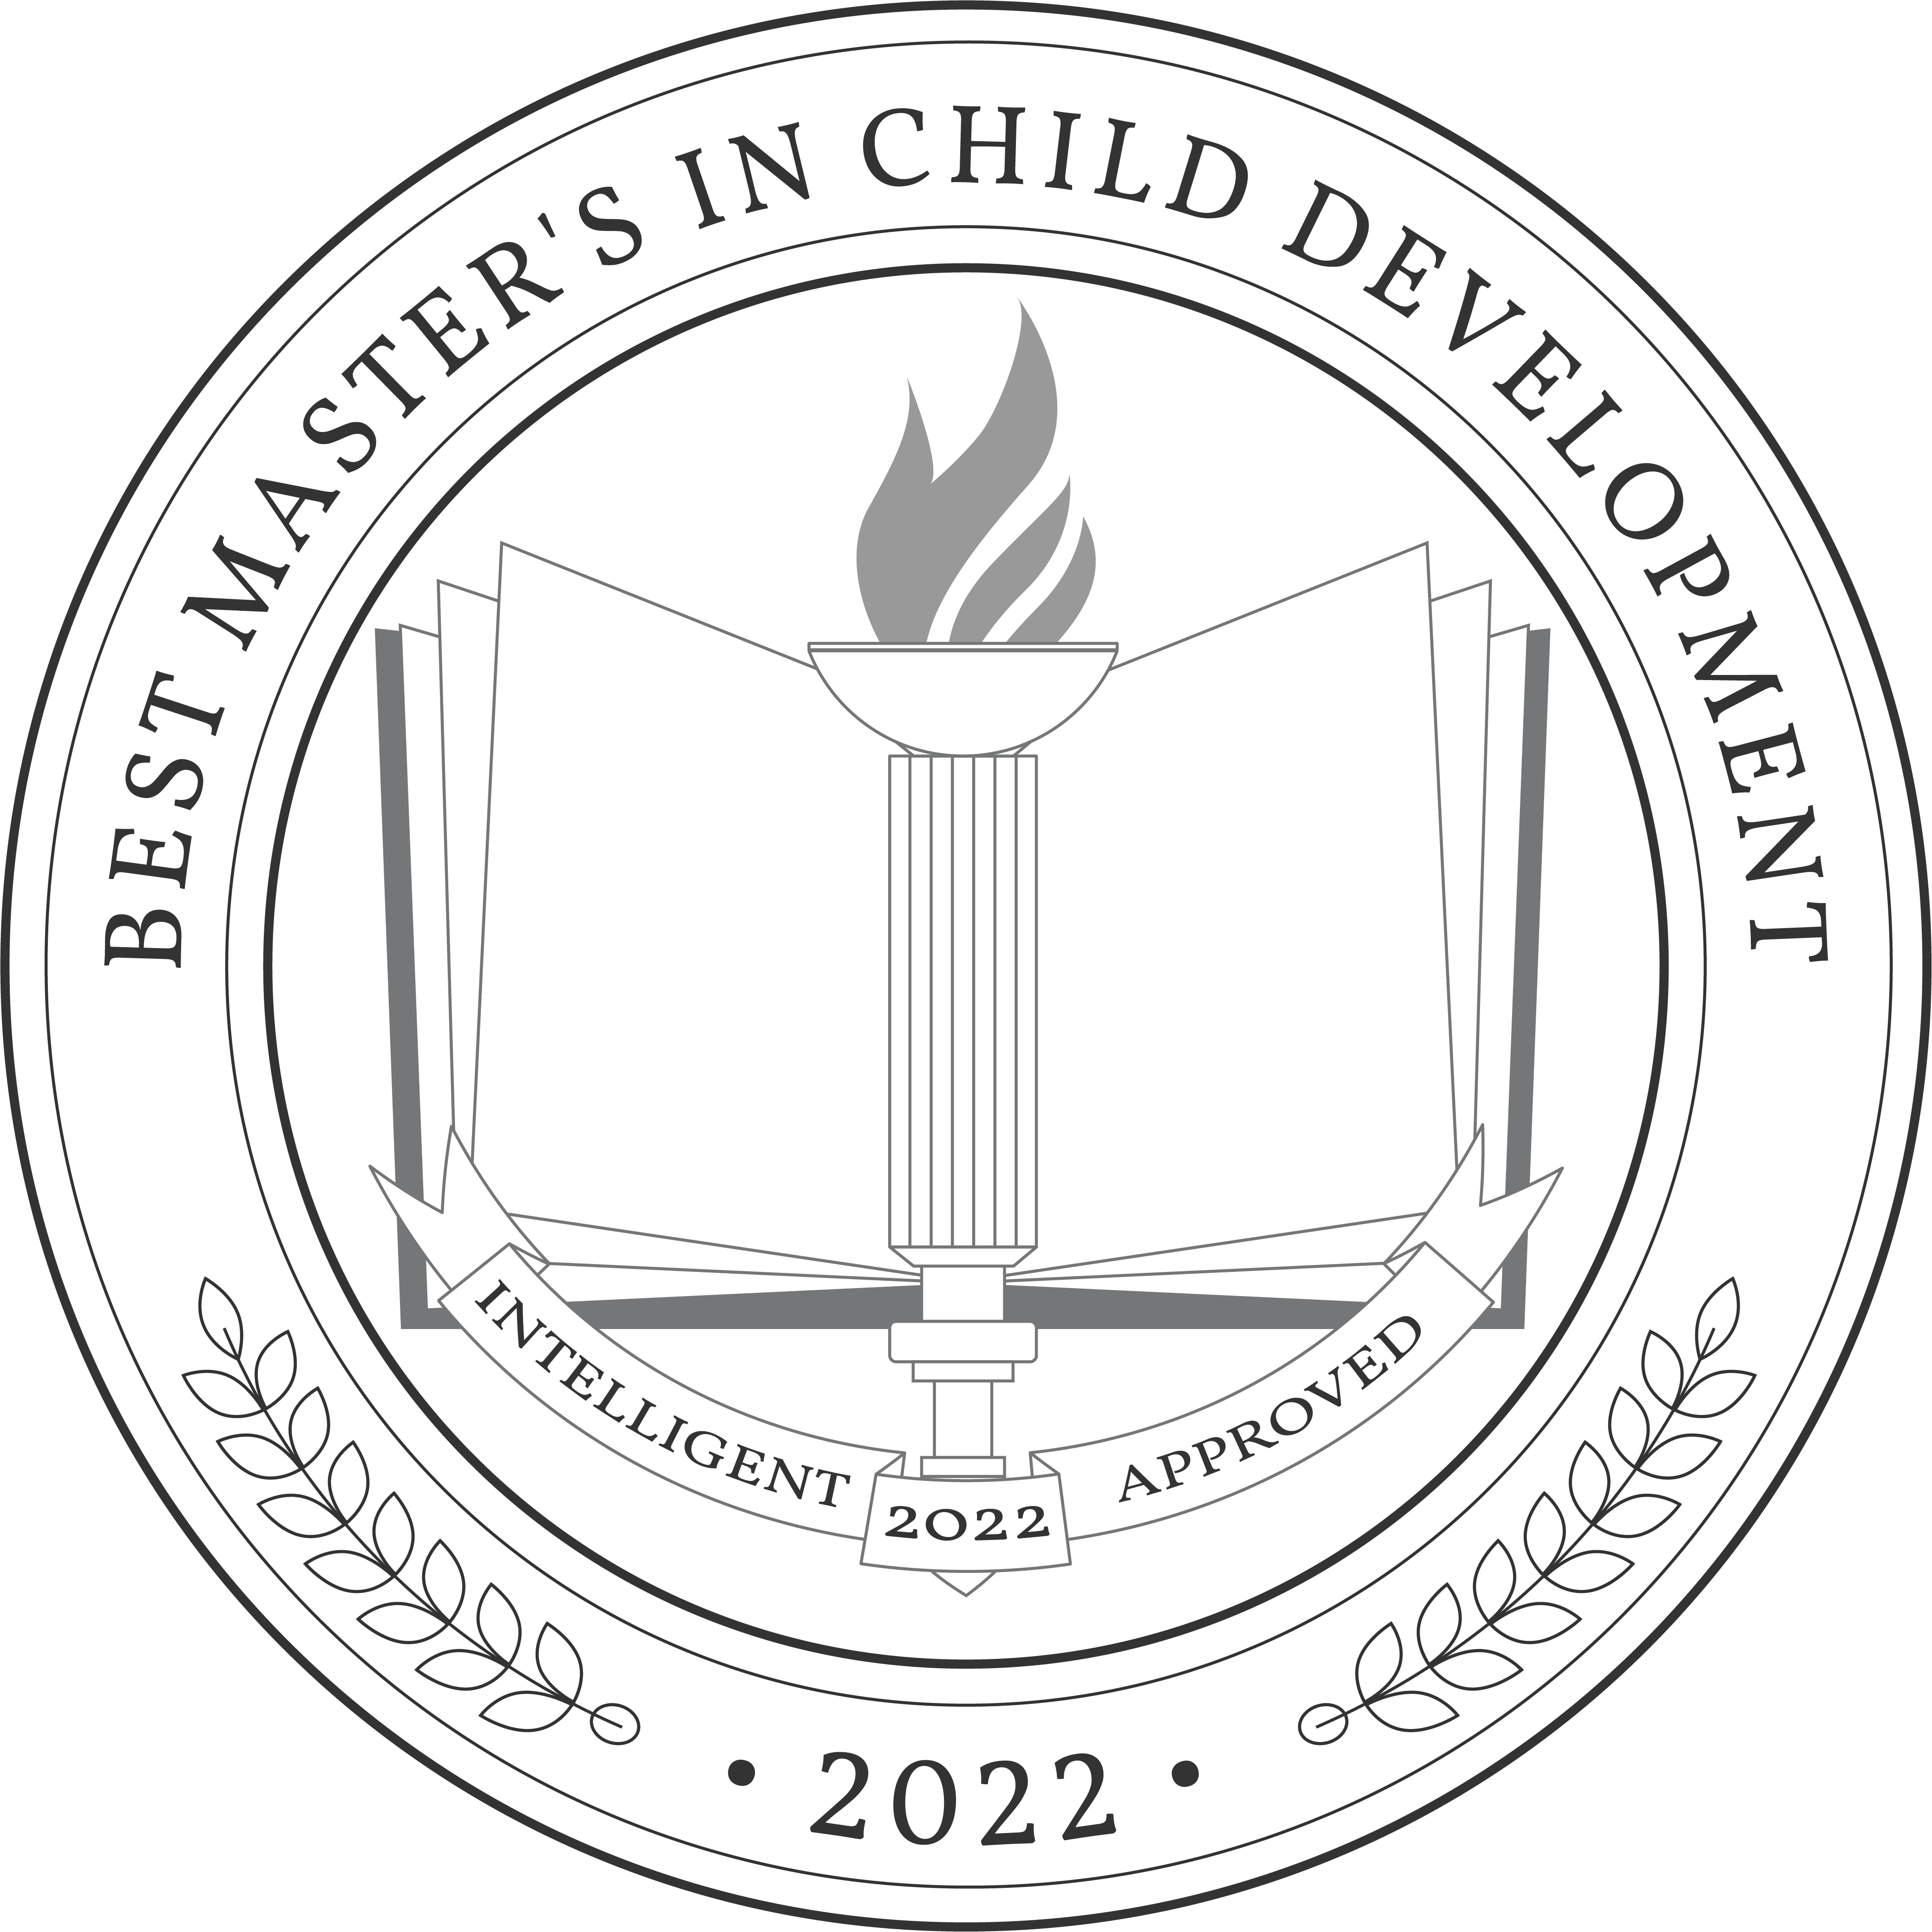 Best Master's in Child Development Badge